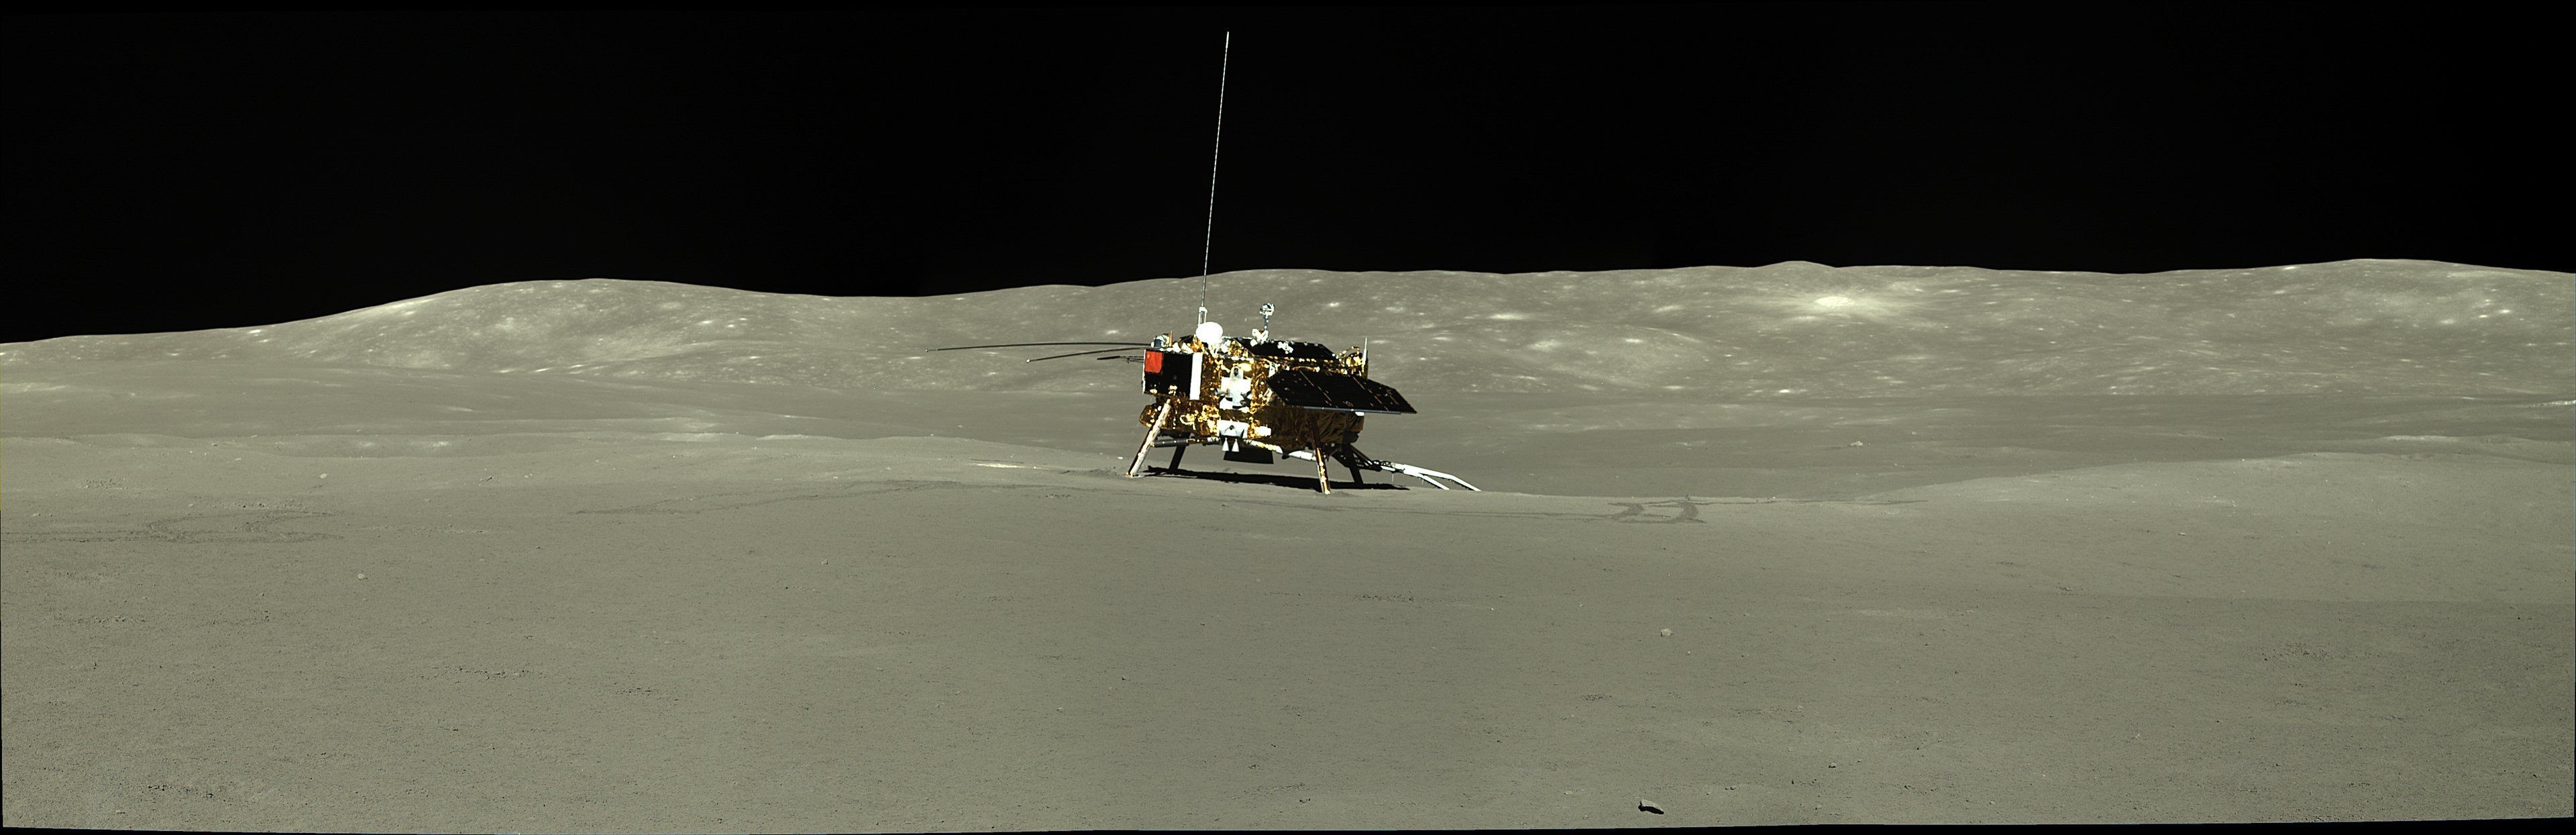 Страны достигшие луны. Китайский Луноход Юйту-2. Китайский Луноход Чанъэ 4. Посадочный модуль Чанъэ-4. Китайский Луноход "Юйту" фото с Луны.